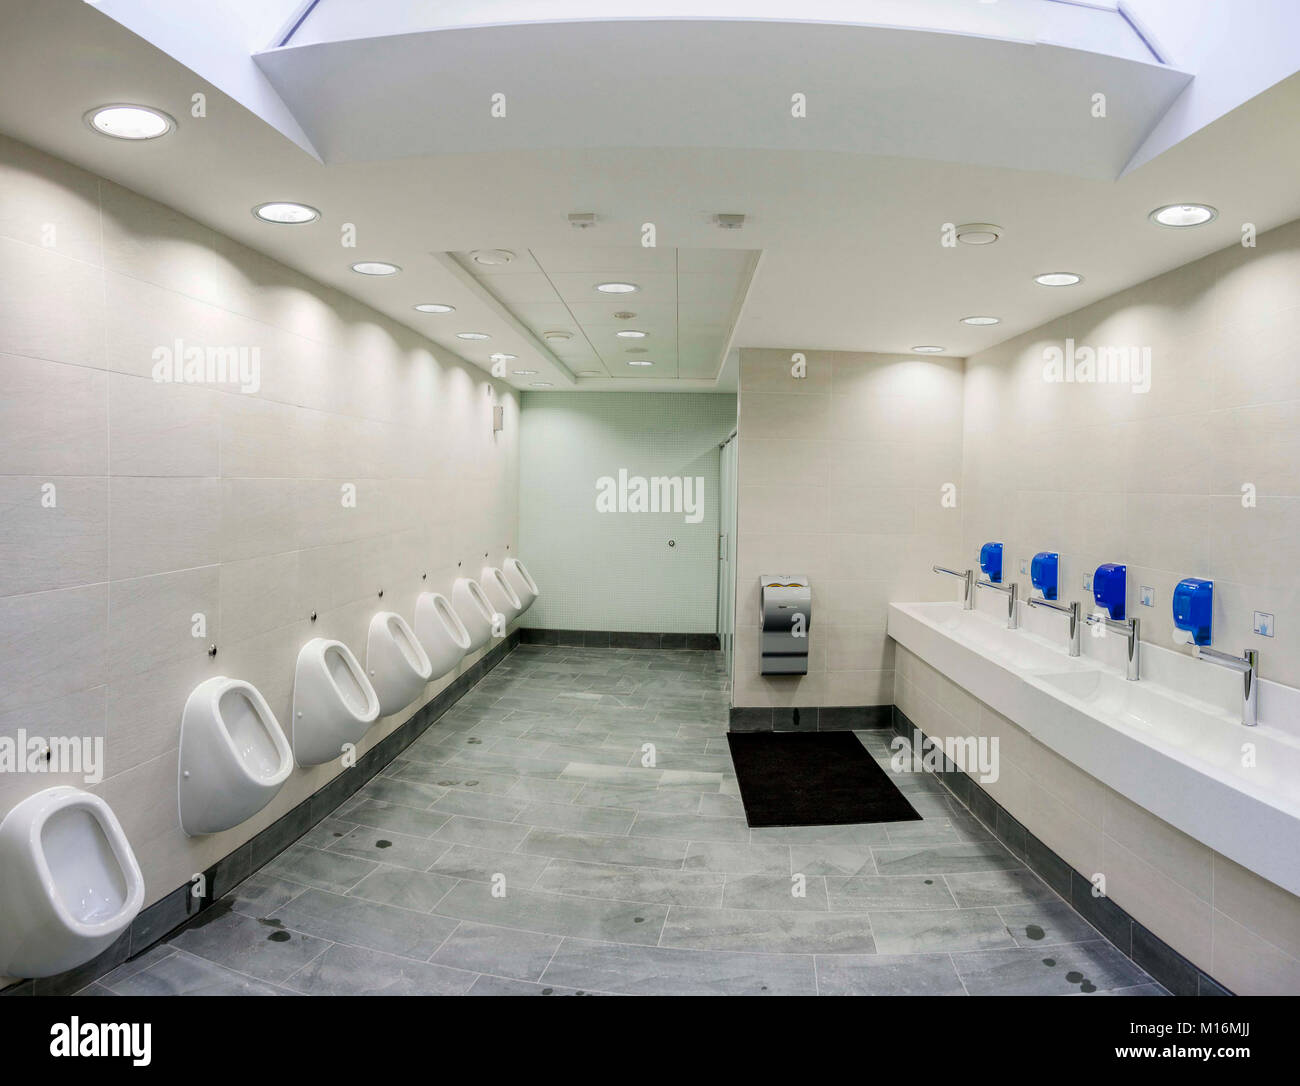 Gents toilet urinals Stock Photo